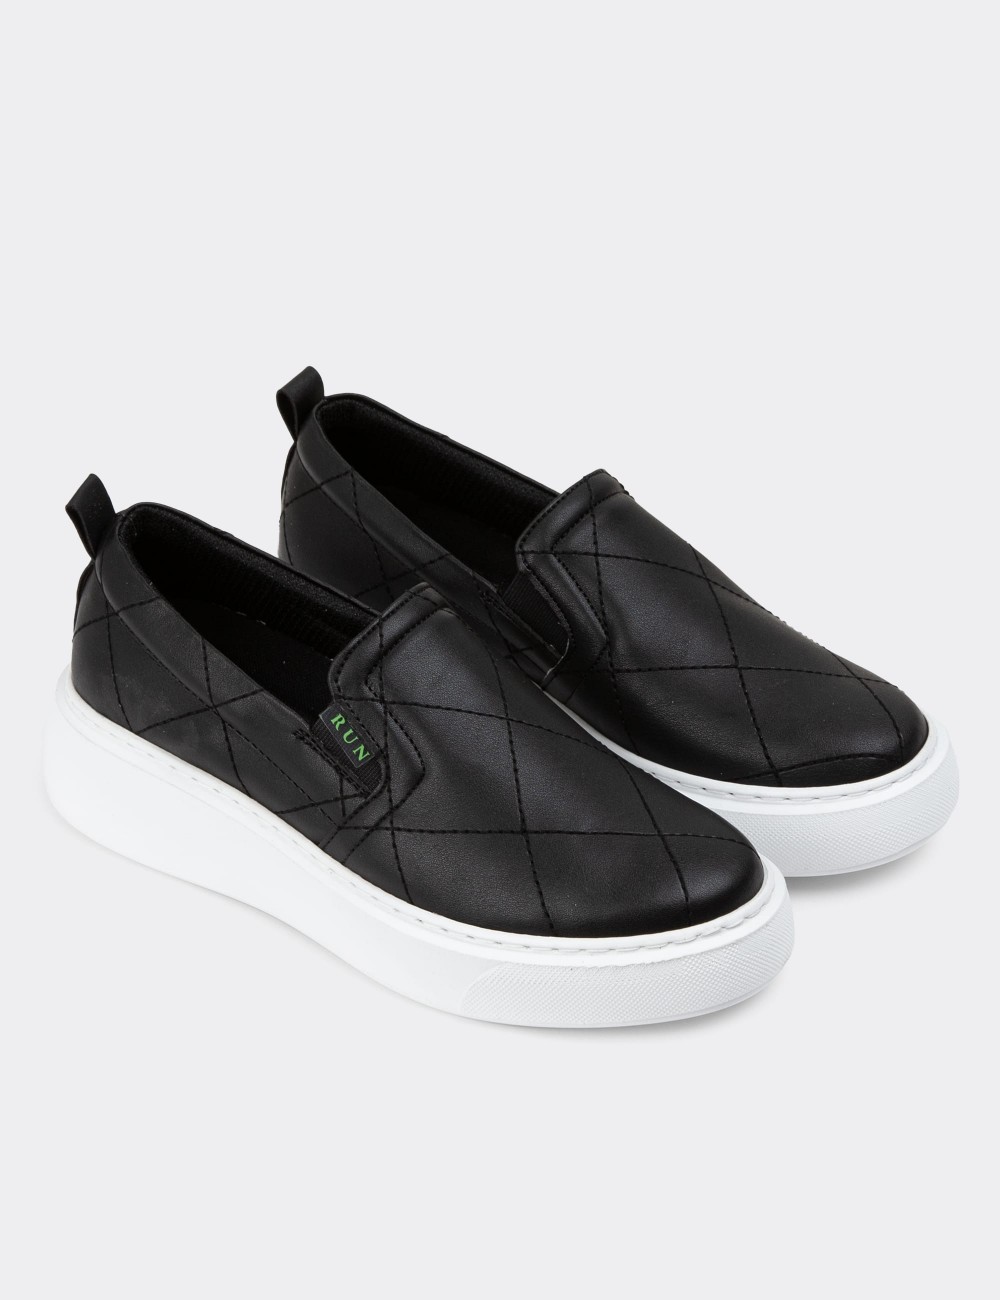 Black Slip-on Sneakers - CE490ZSYHP01